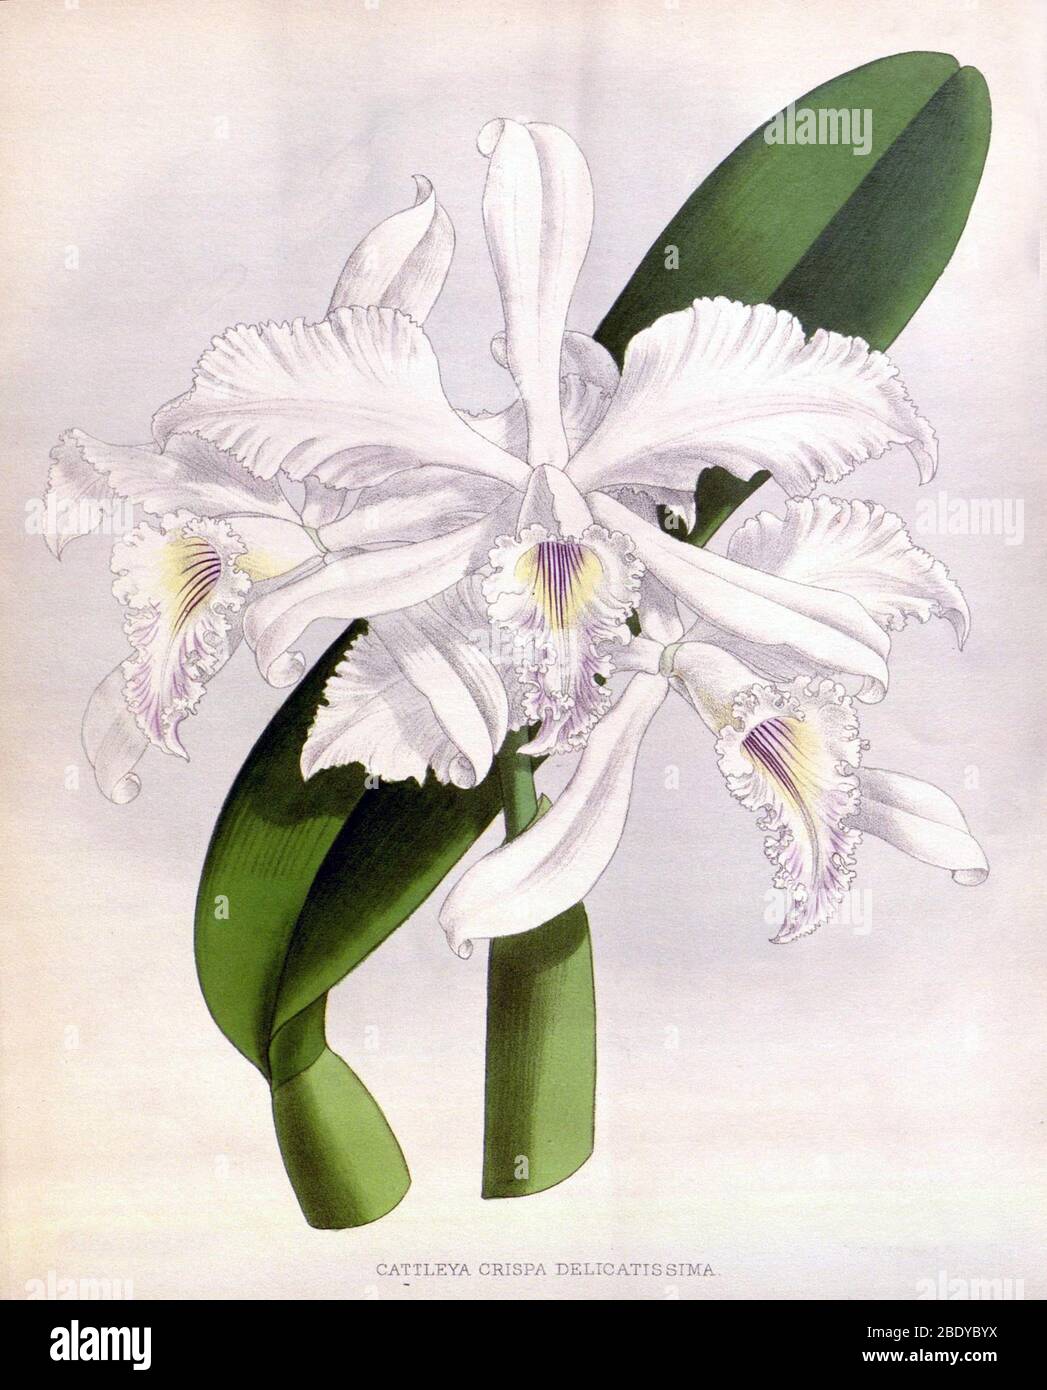 Orchid, C. crispa delicatissima, 1891 Stock Photo